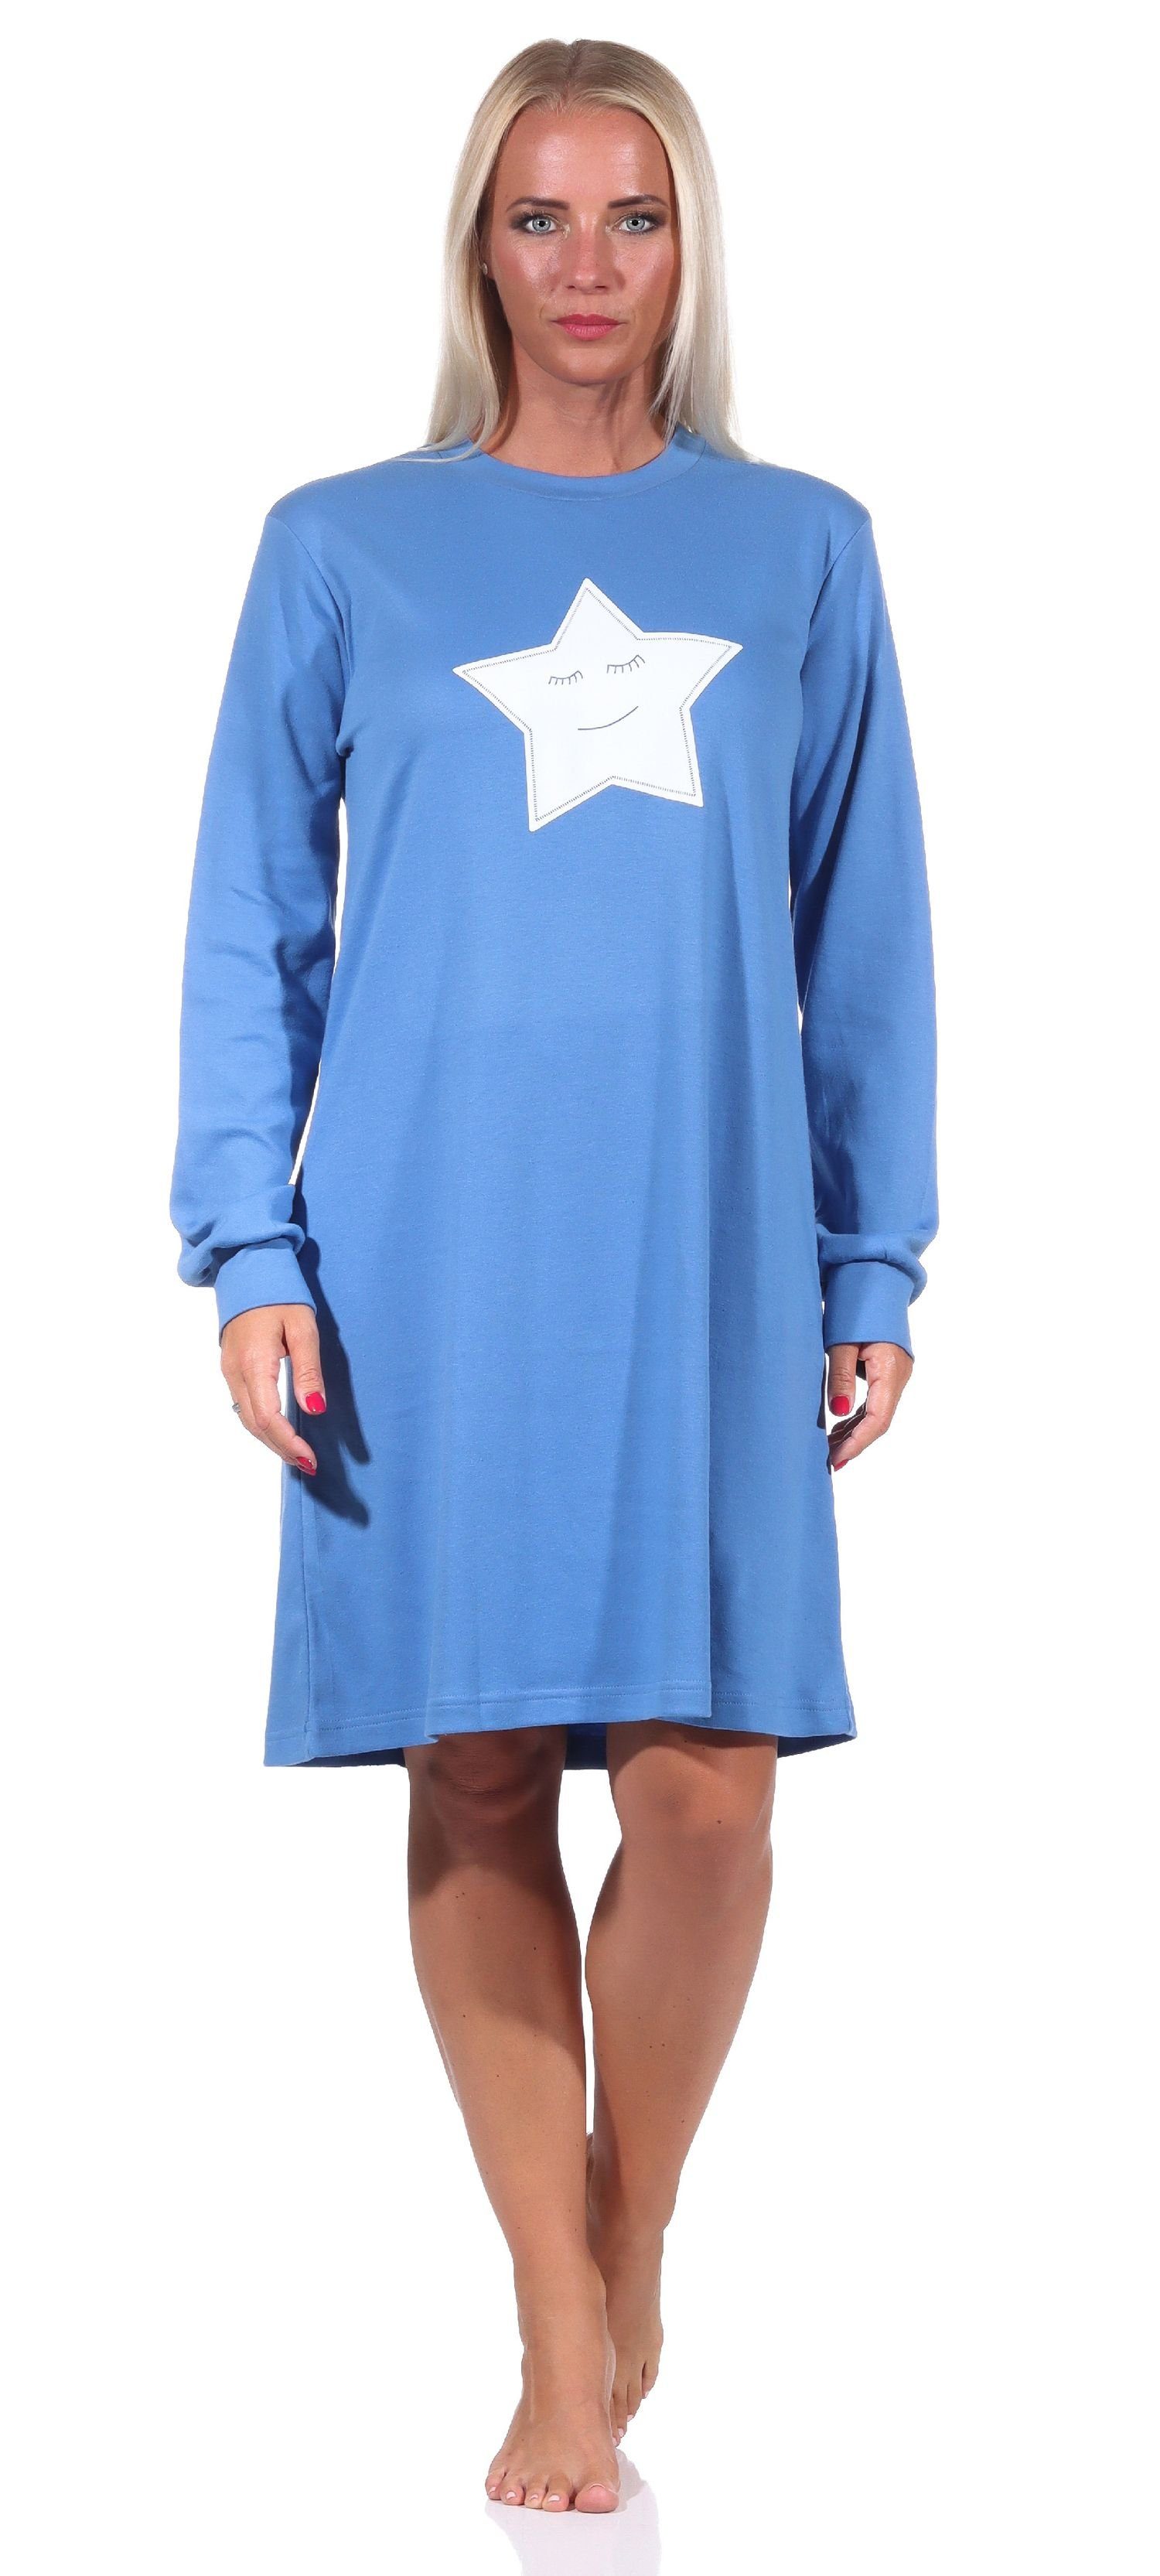 Normann Nachthemd Kuschel Interlock Damen Nachthemd langarm mit Bündchen + Sterne Motiv blau